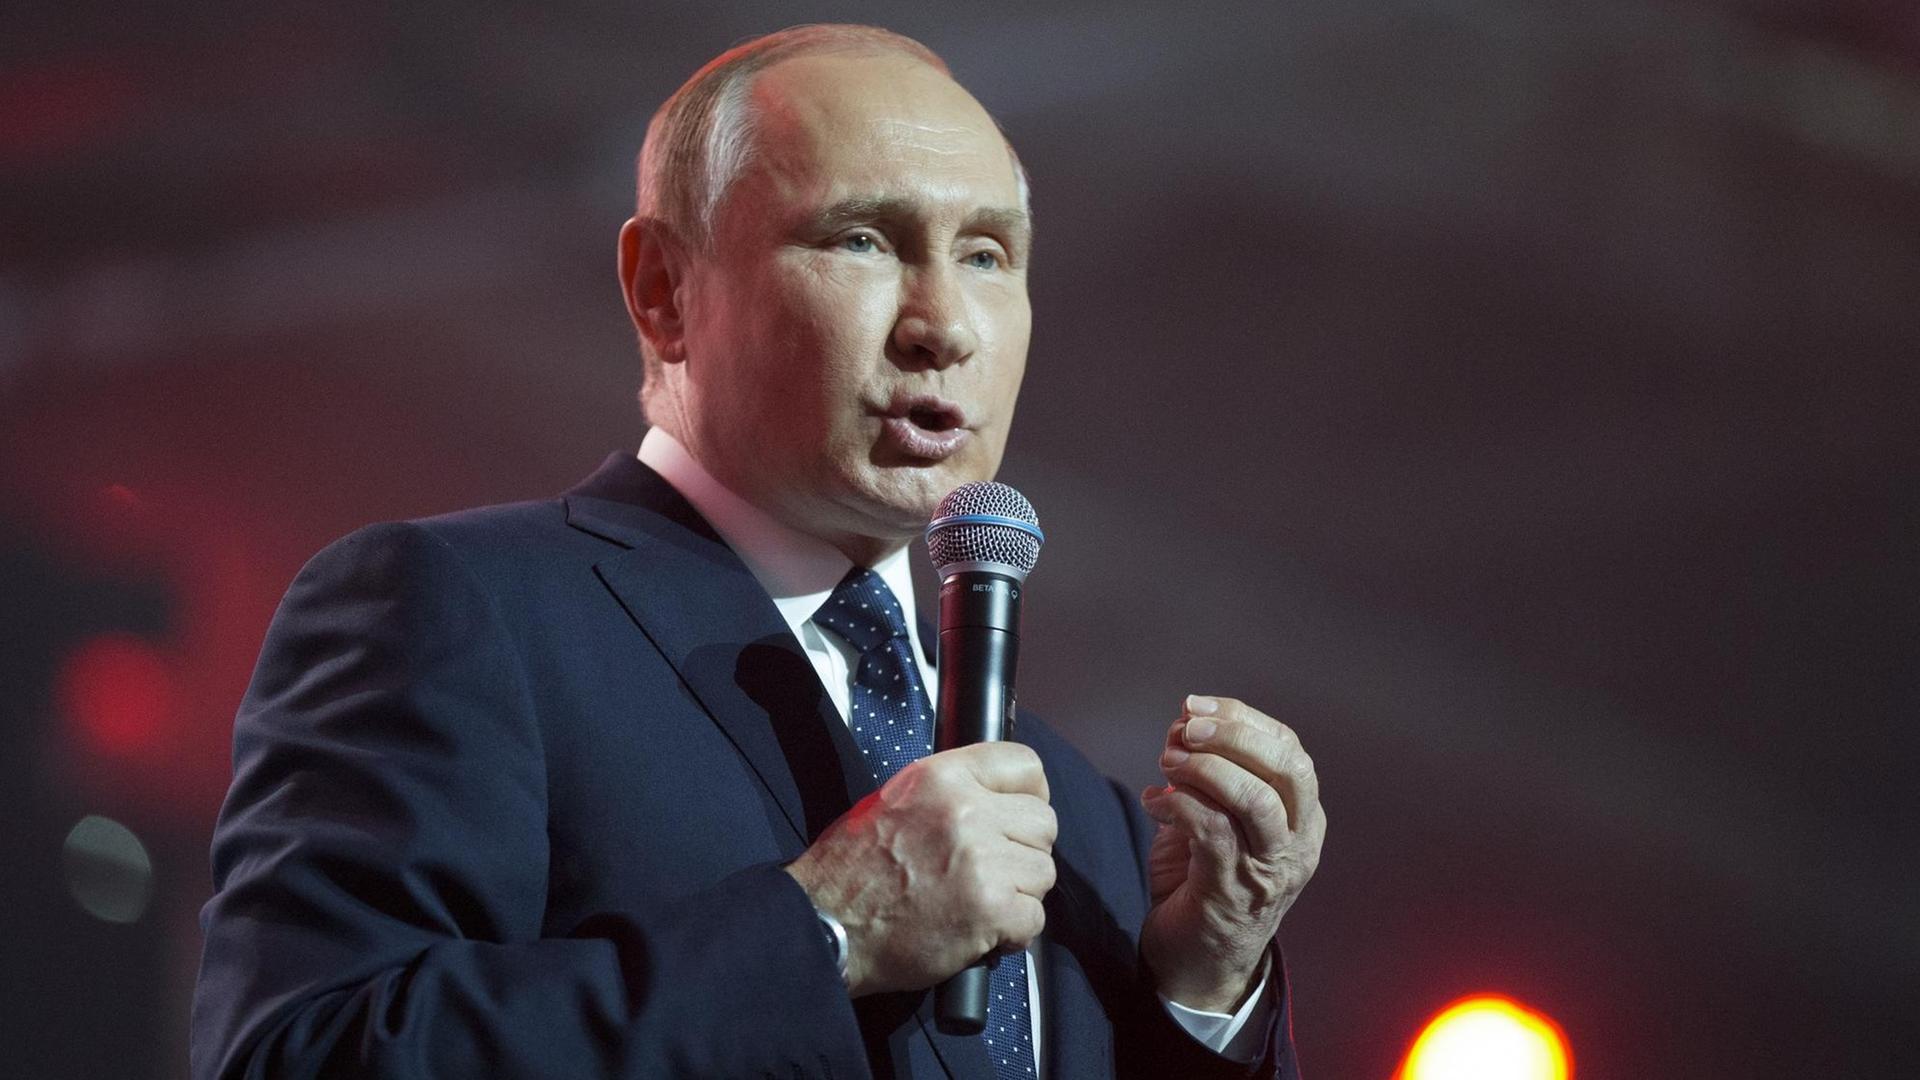 Der russische Präsident Wladimir Putin spricht auf einer Wahlkampfveranstaltung in Moskau.